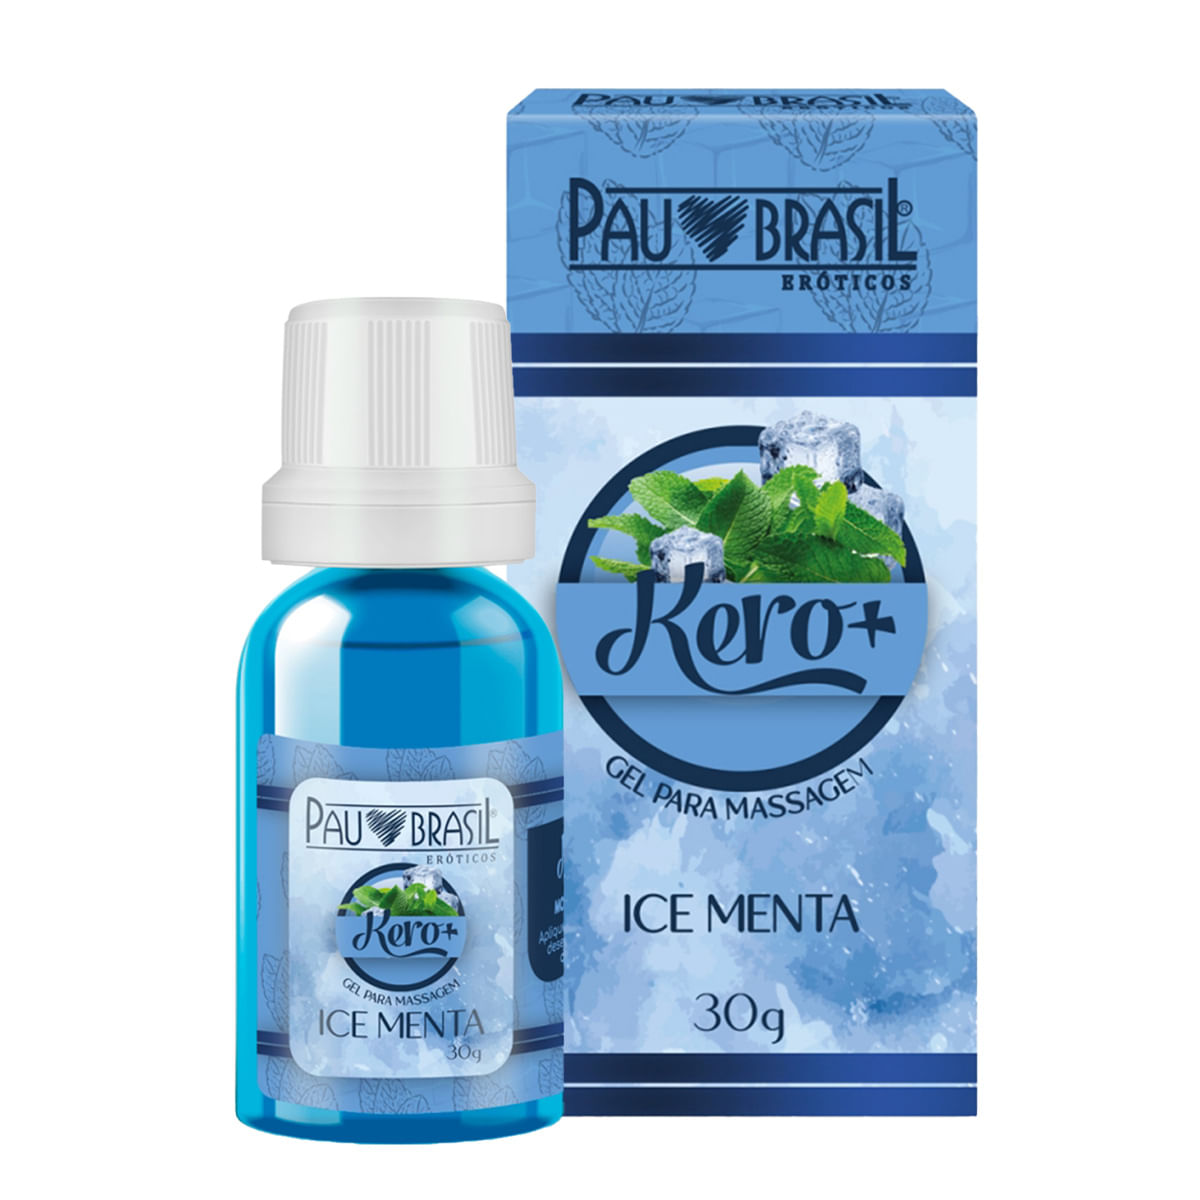 Kero + Gel Beijável Ice para Massagem 30 g Pau Brasil